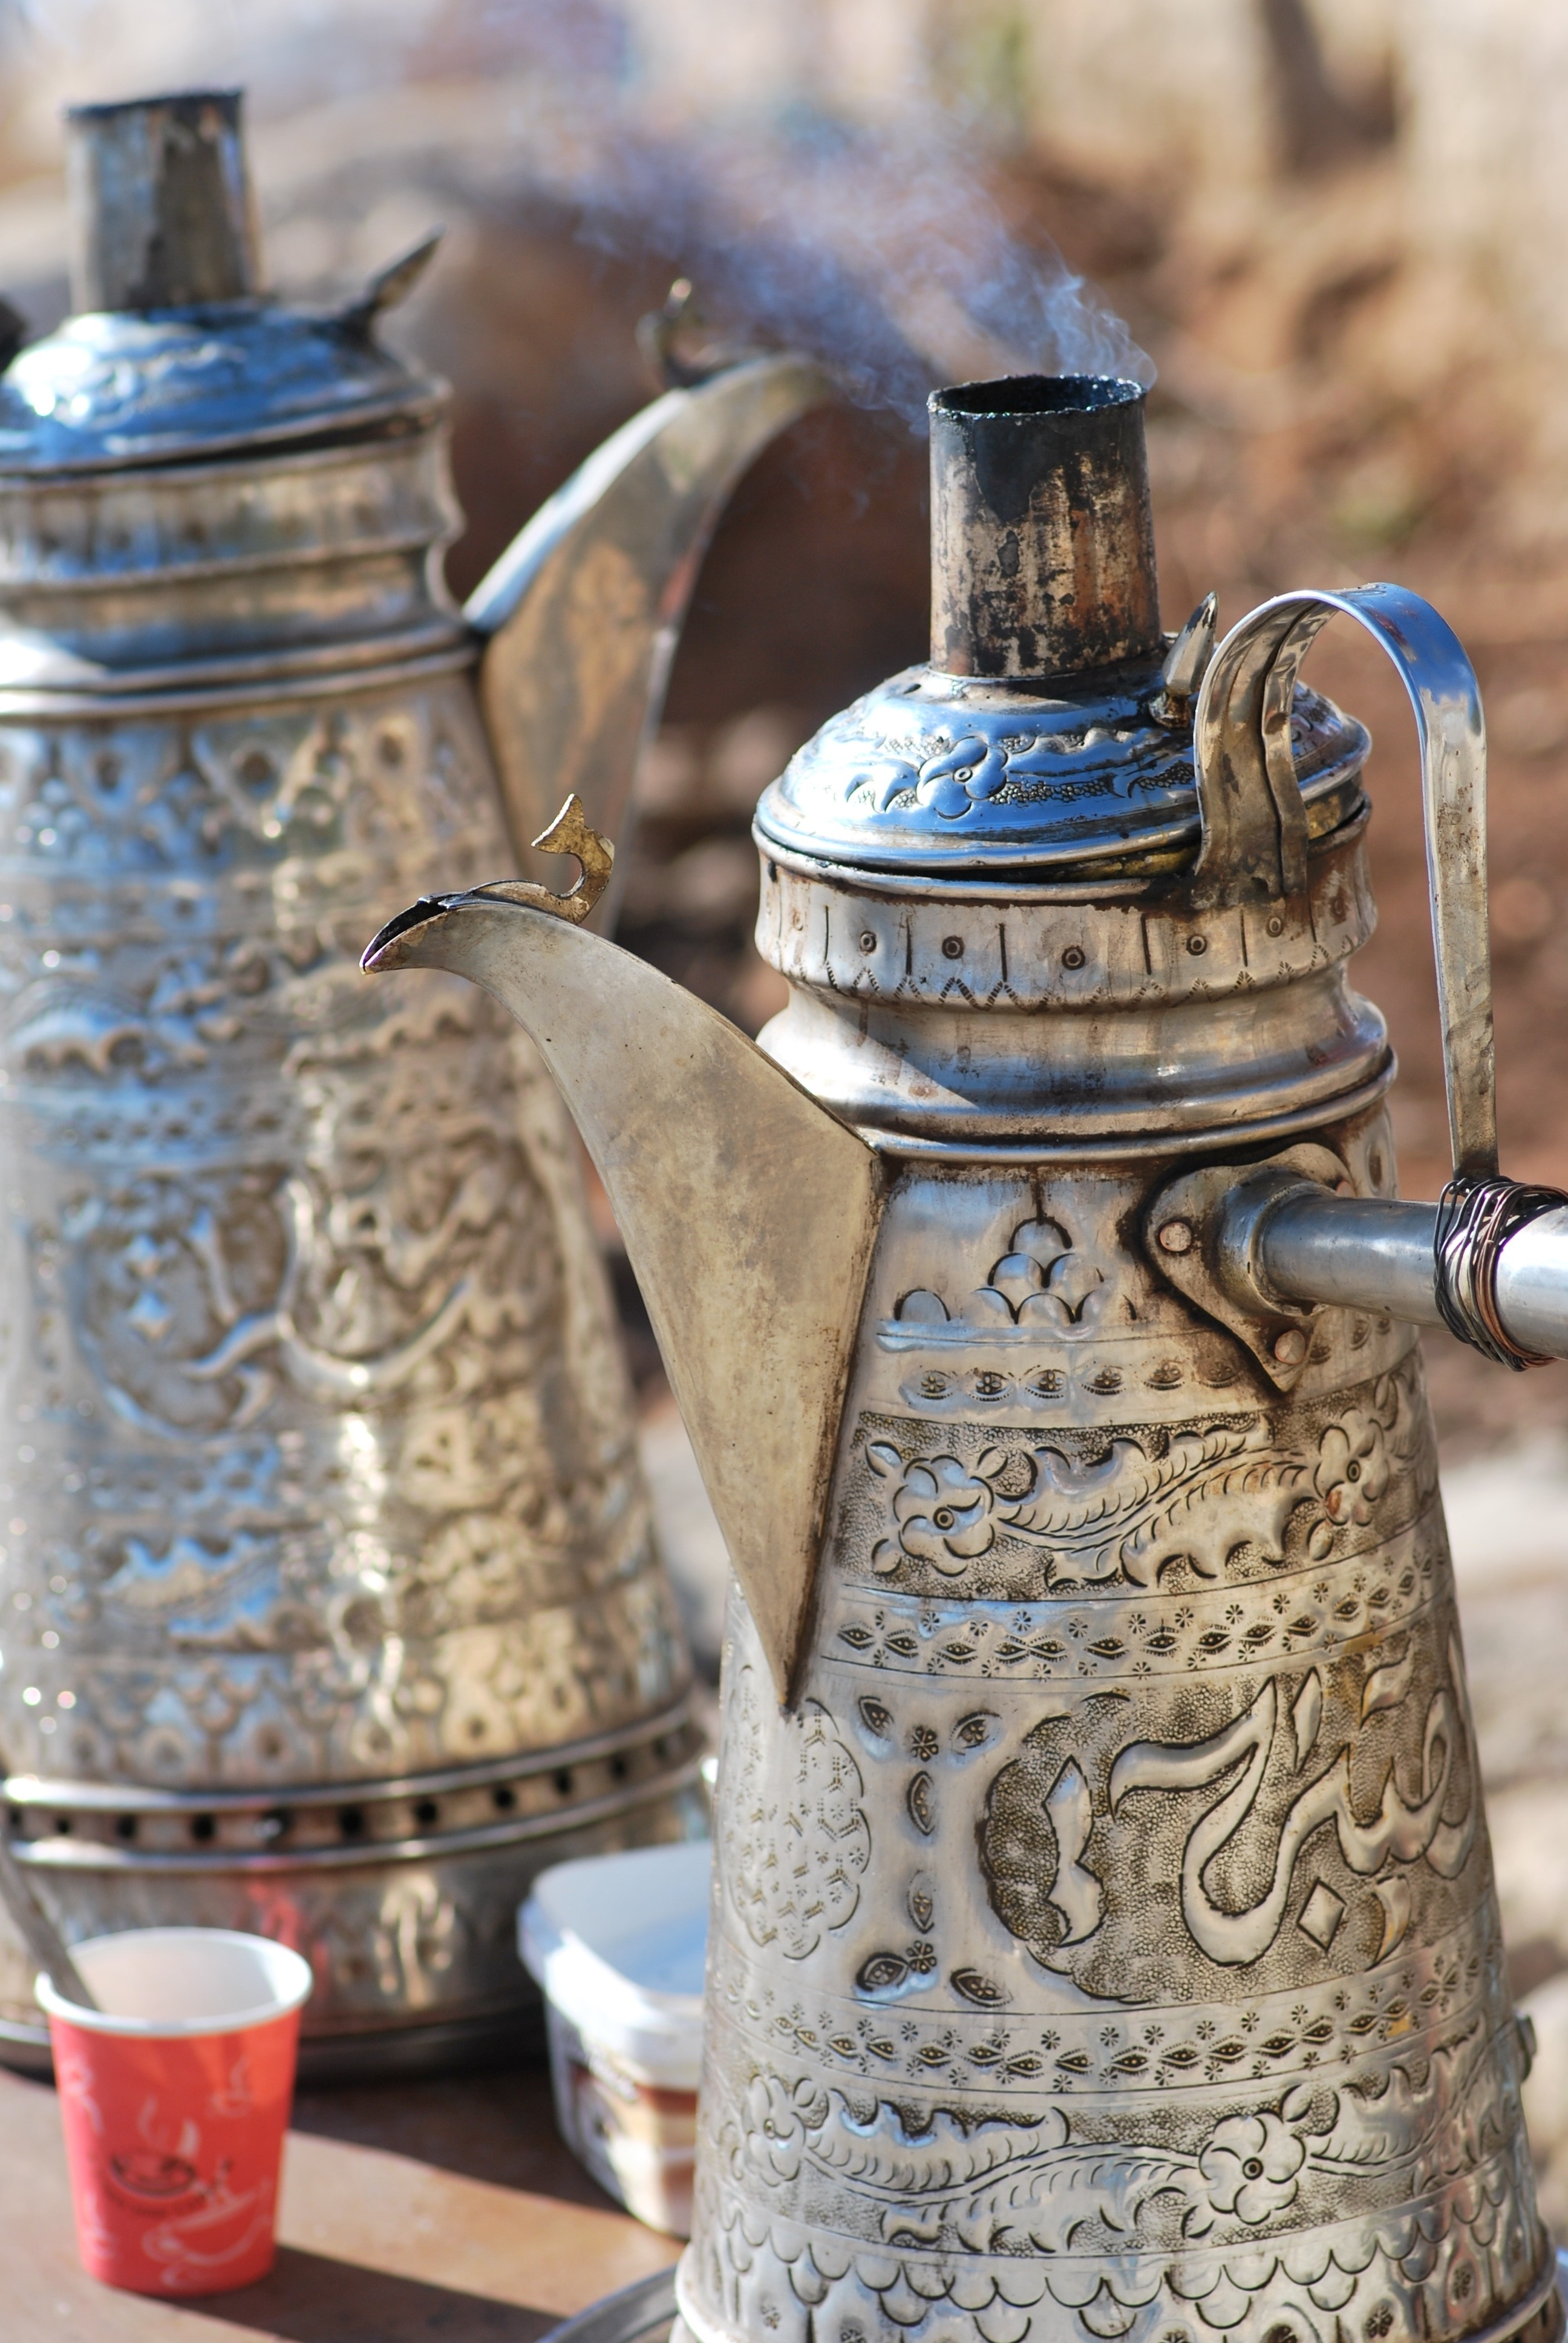 stainless steel turkish pot